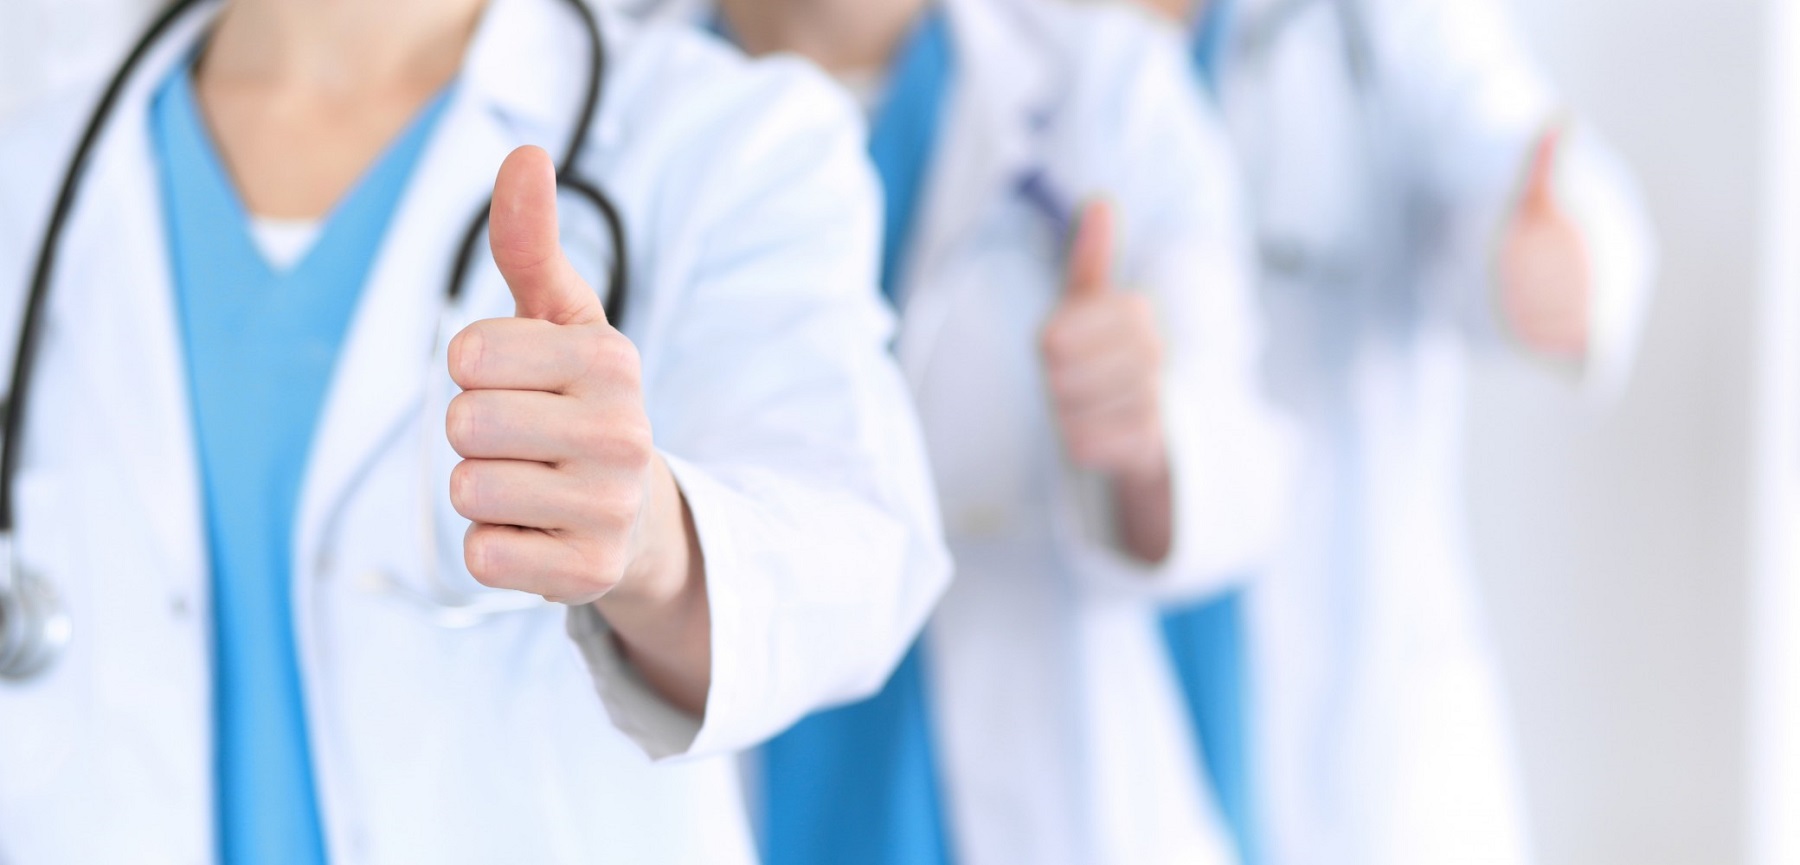 7 تعديلات جديدة مُقترحة في قانون المهن الطبية لزيادة قيمة بدل العاملين بالقطاع الصحي